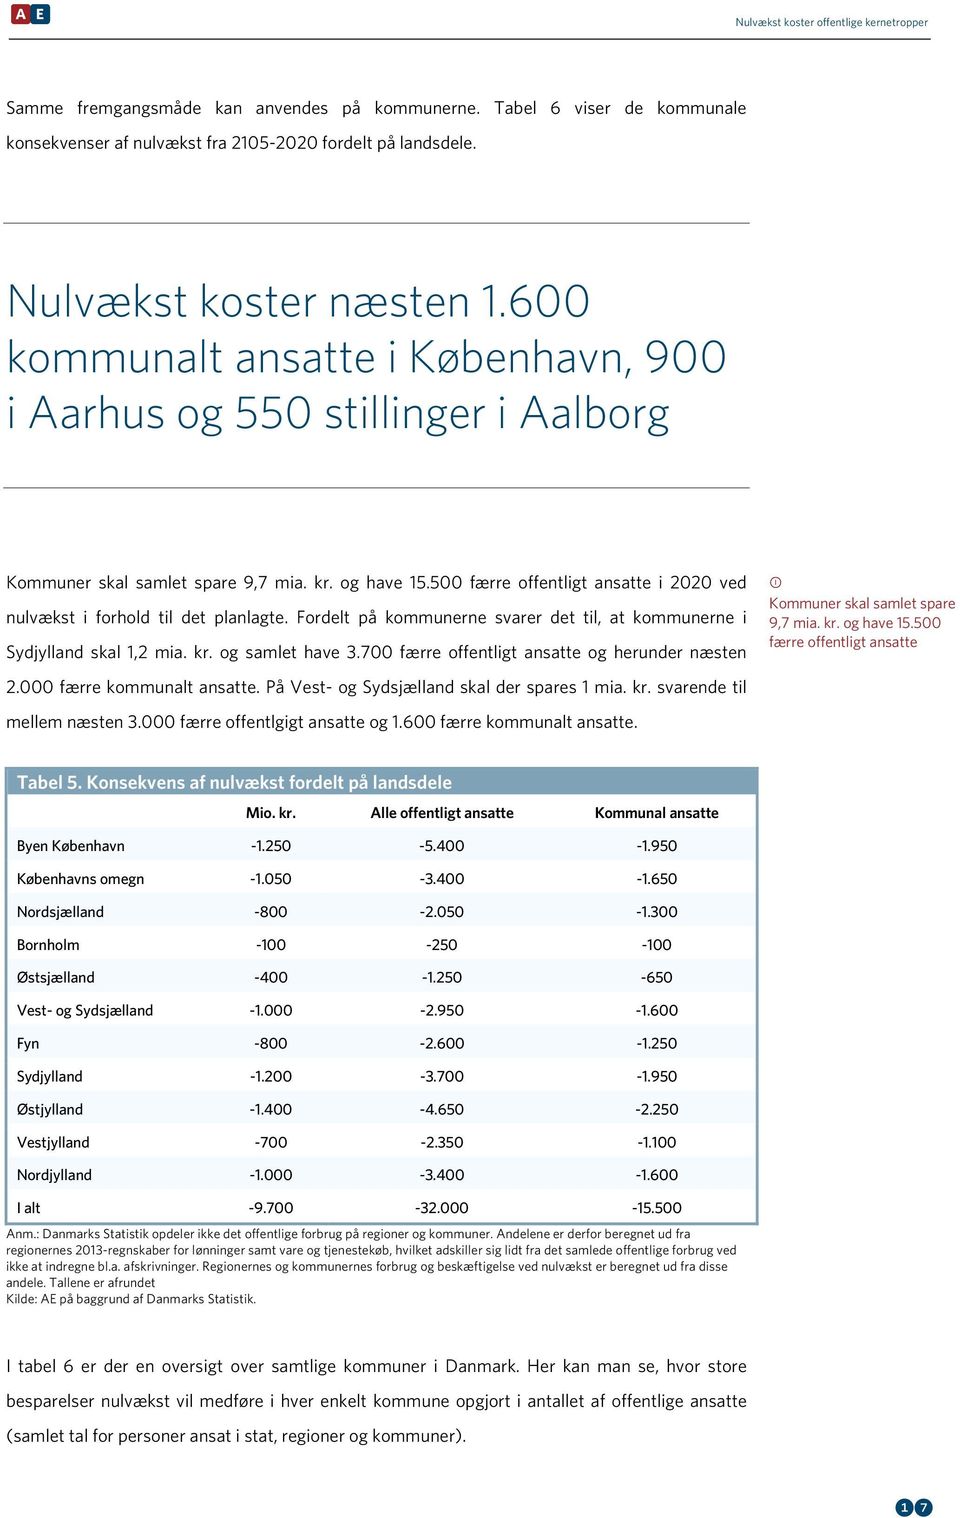 500 færre offentligt ansatte i 2020 ved nulvækst i forhold til det planlagte. Fordelt på kommunerne svarer det til, at kommunerne i Sydjylland skal 1,2 mia. kr. og samlet have 3.